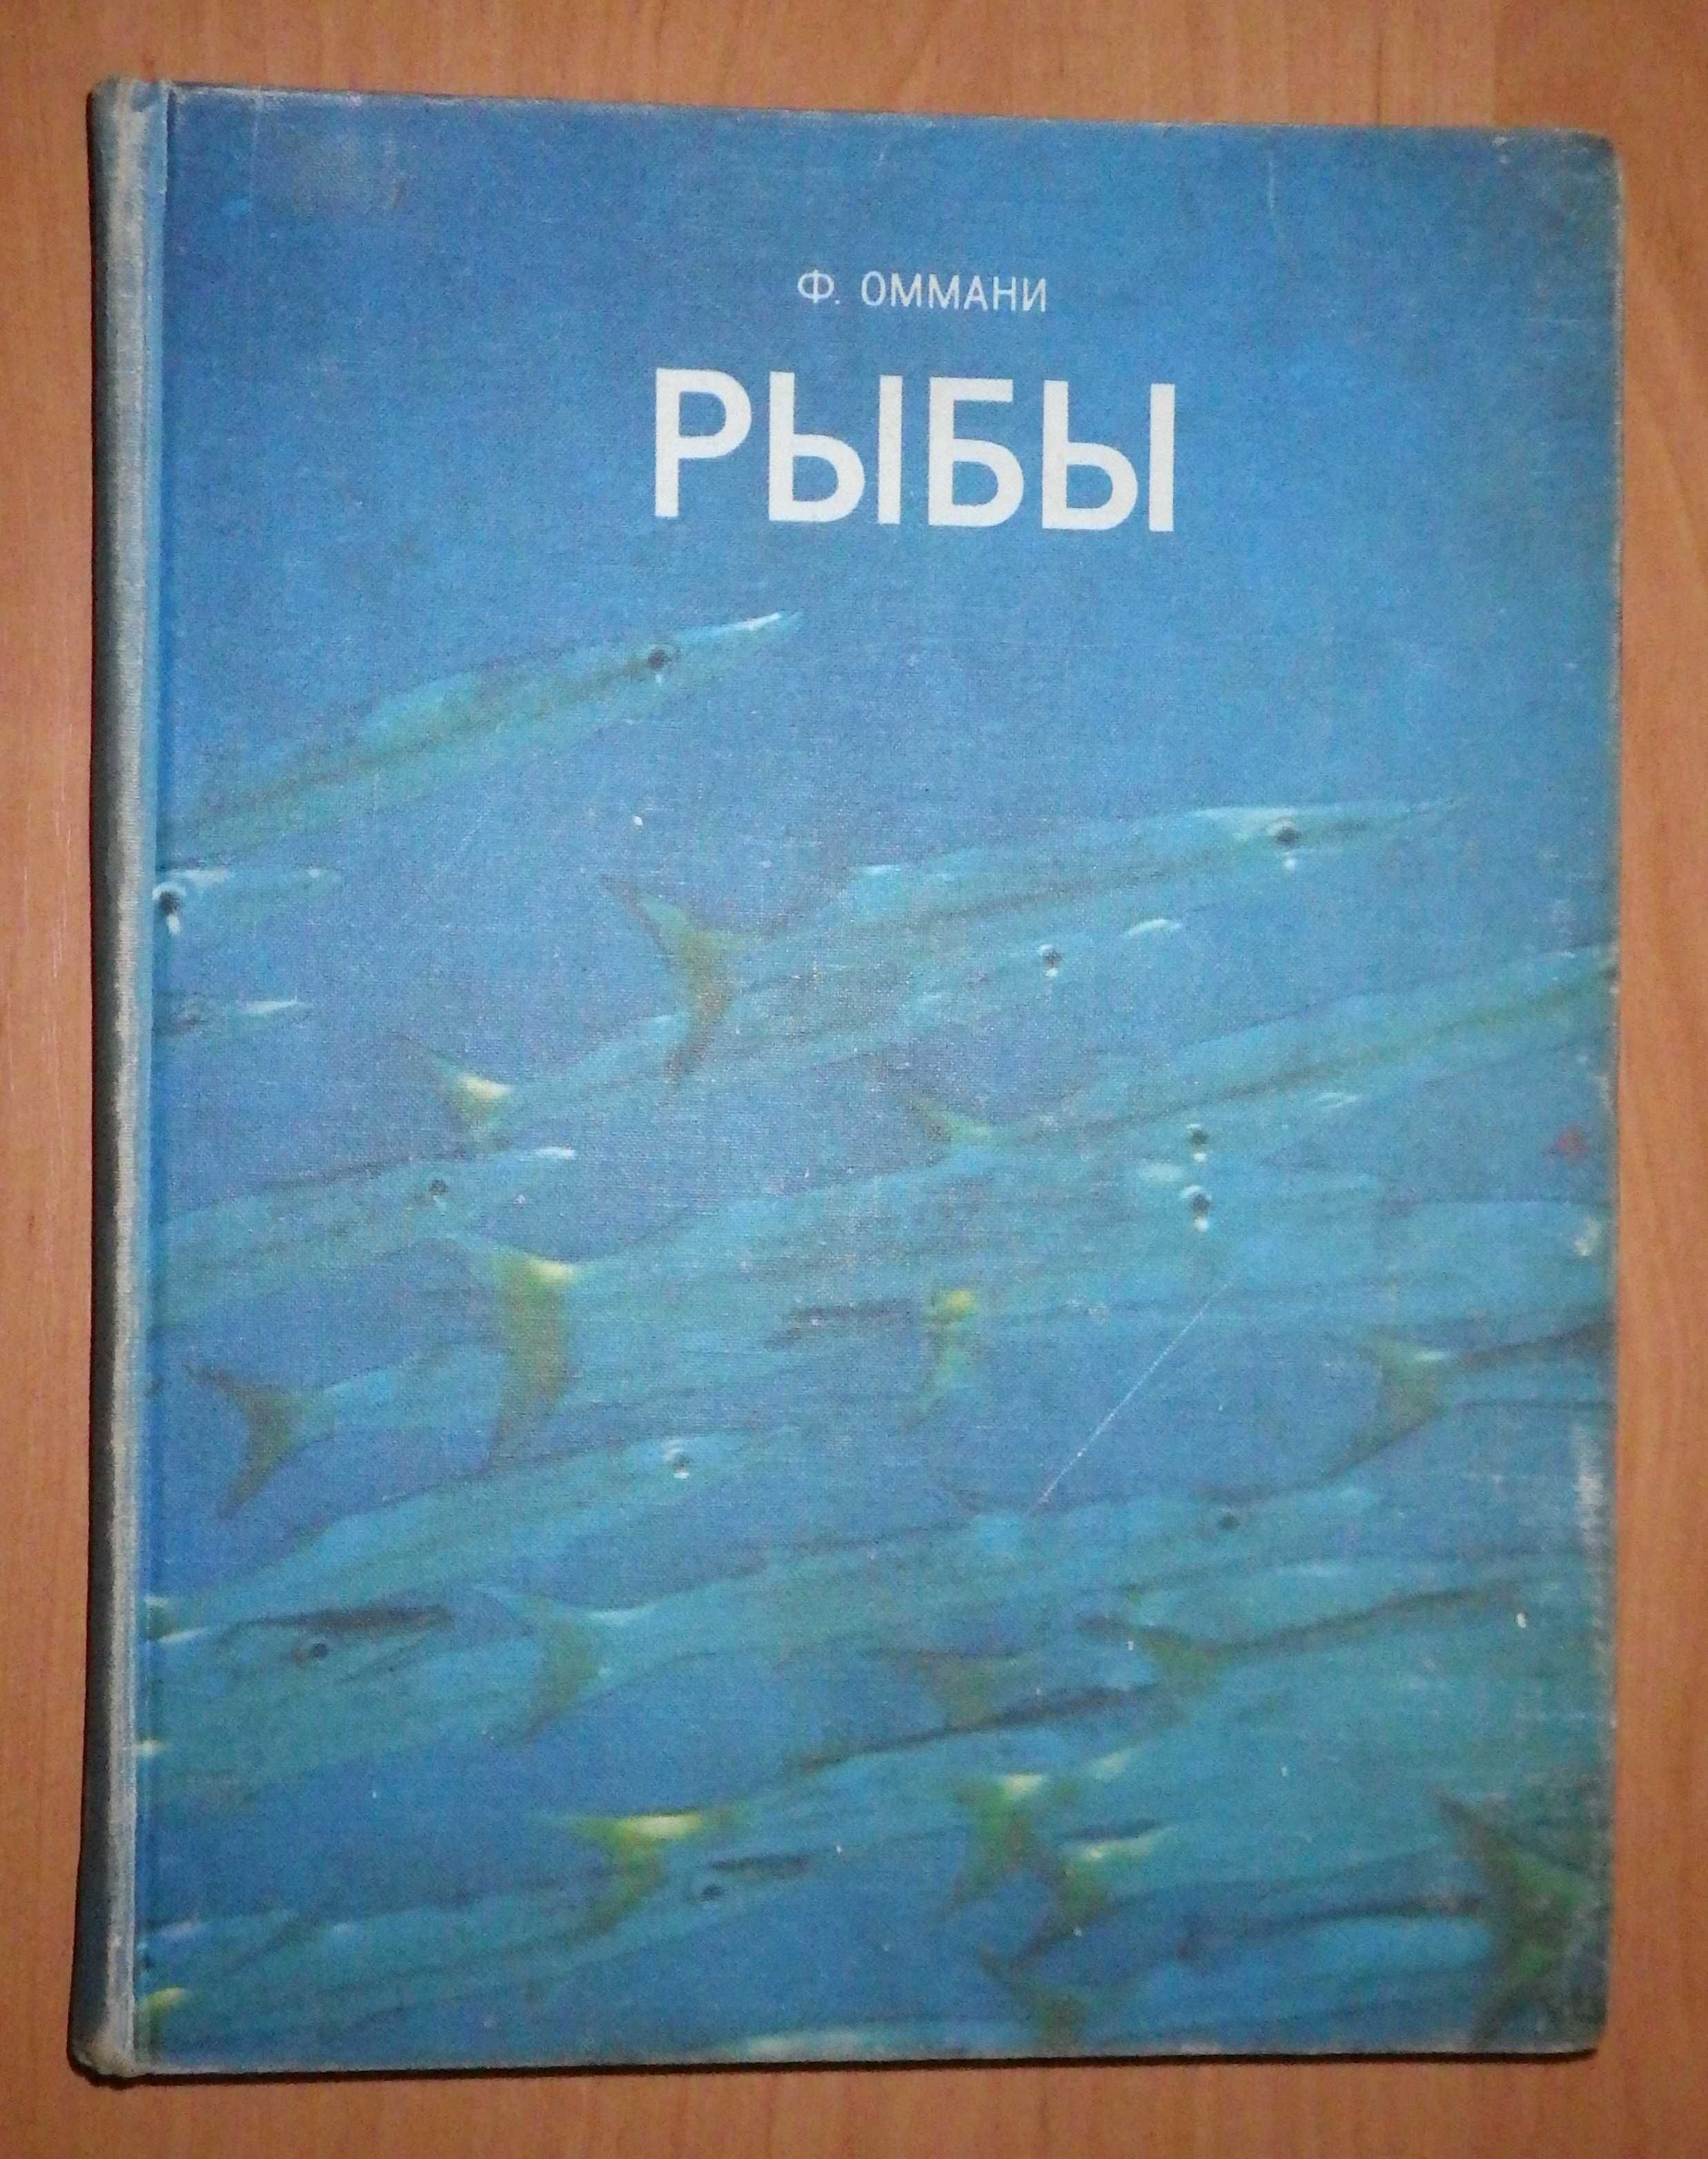 Книга "Рыбы." Френсис Д. Оммани. Изд. "Мир", 1975 г.